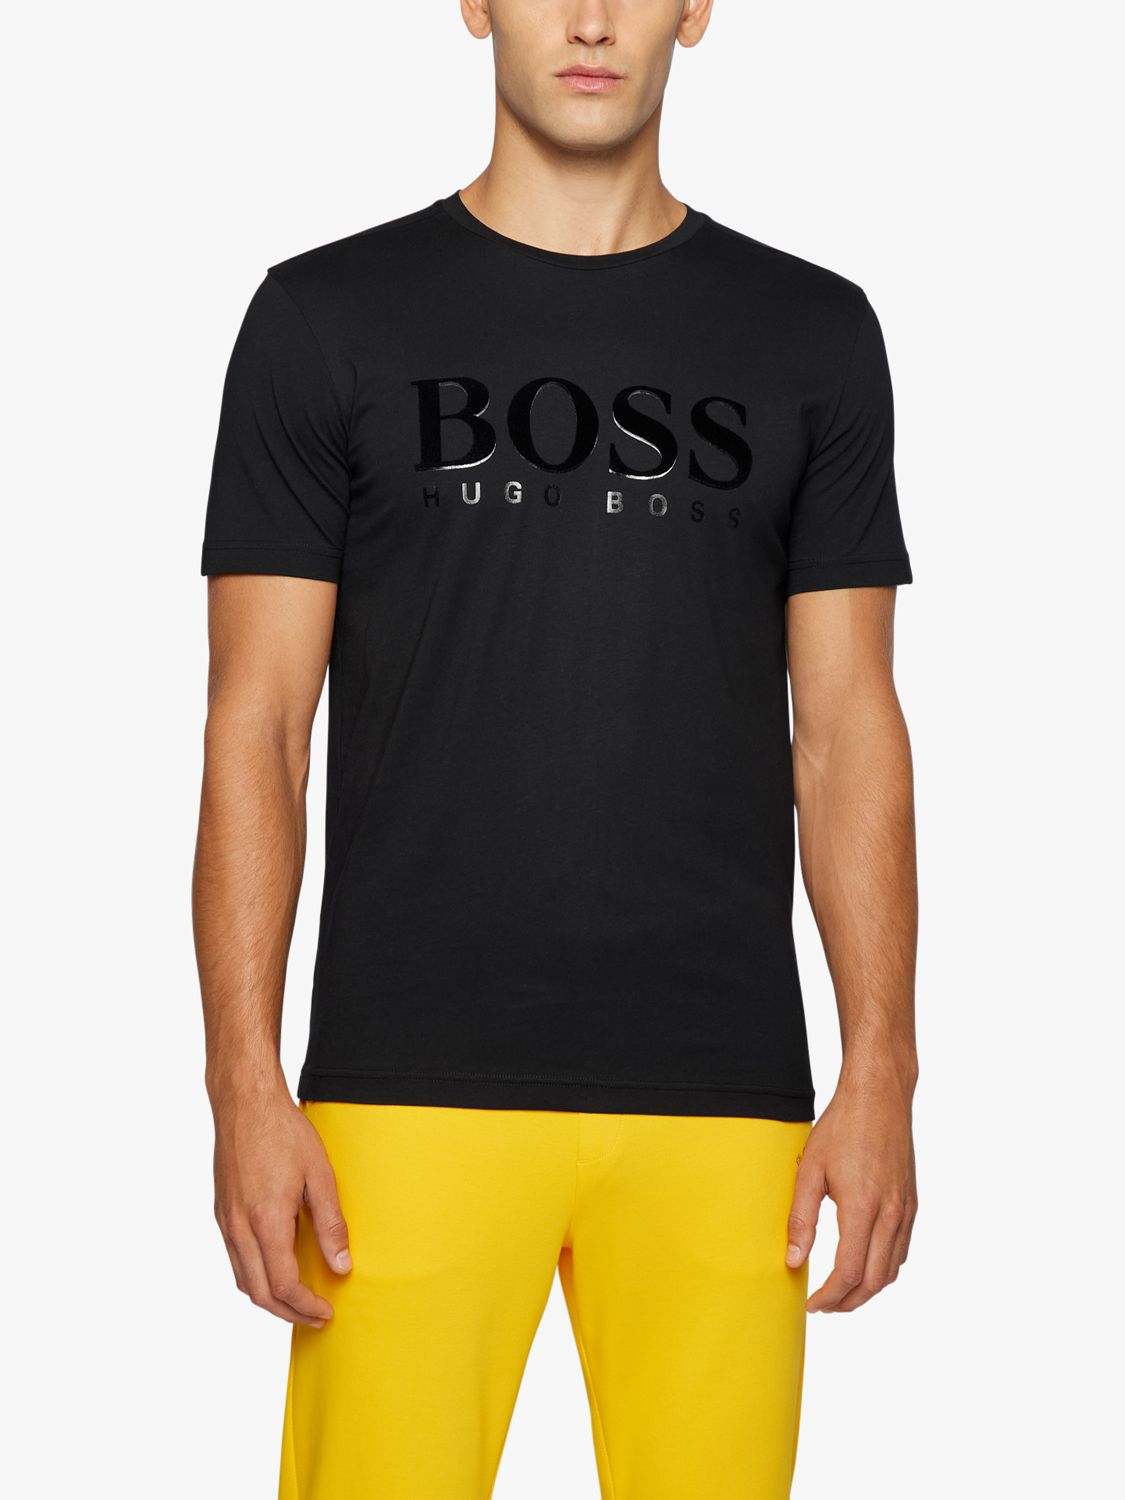 BOSS Men's T-Shirt